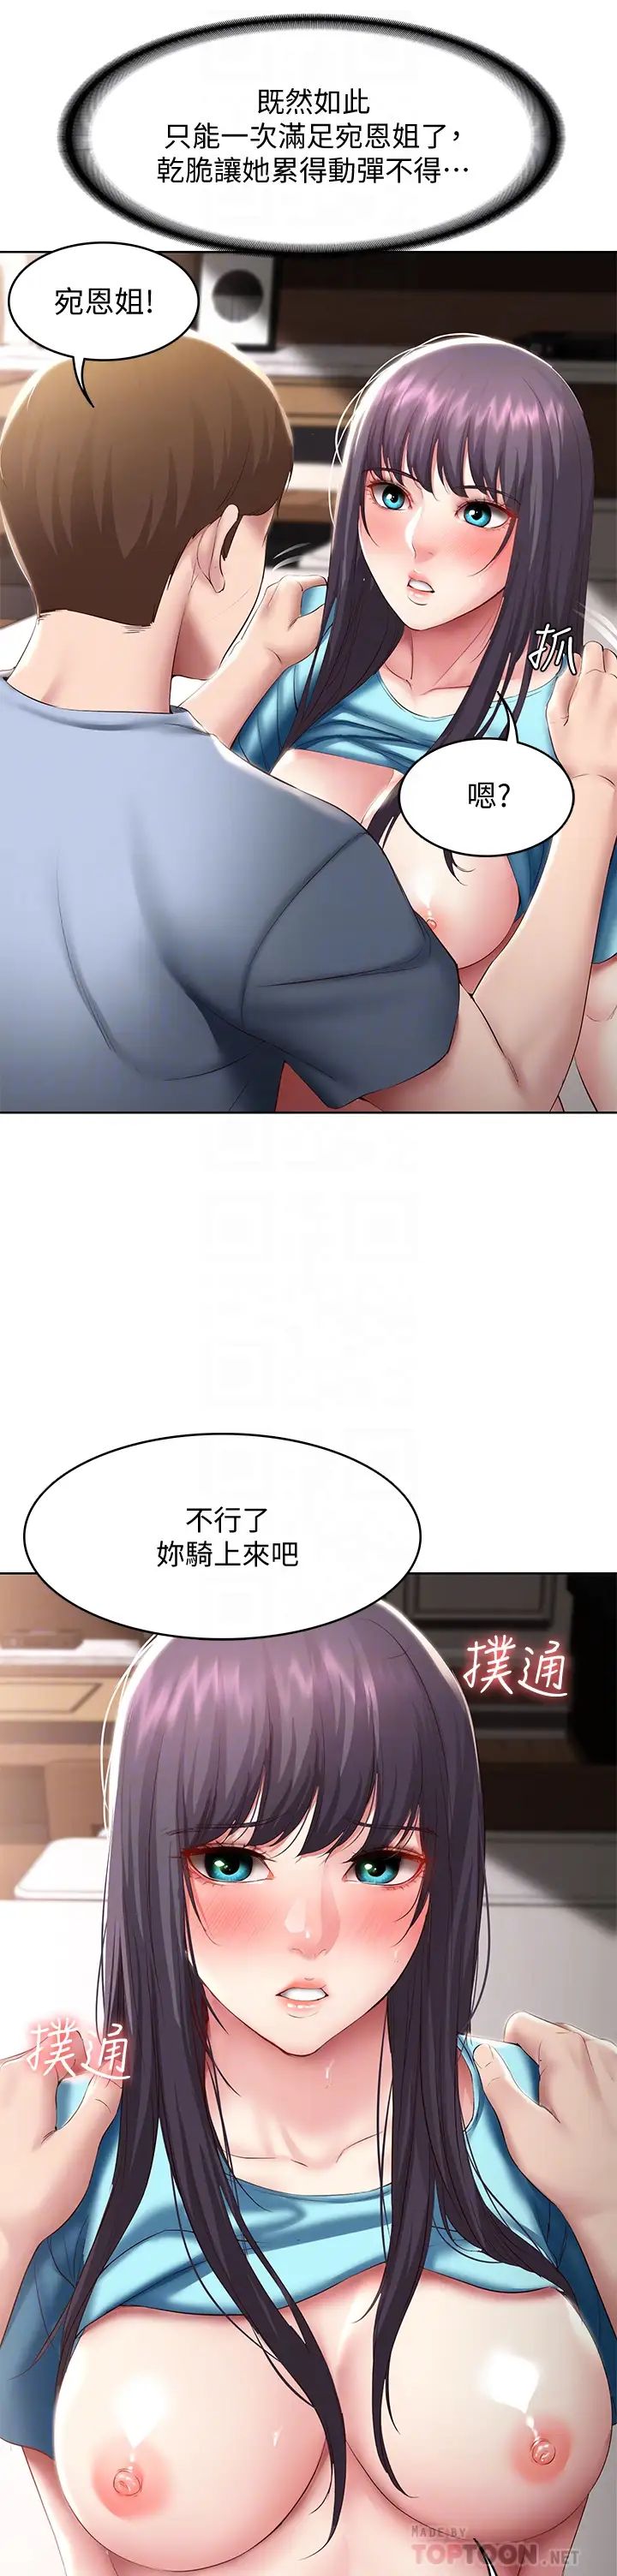 韩国污漫画 寄宿日記 第84话潮吹在俊宇脸上 8